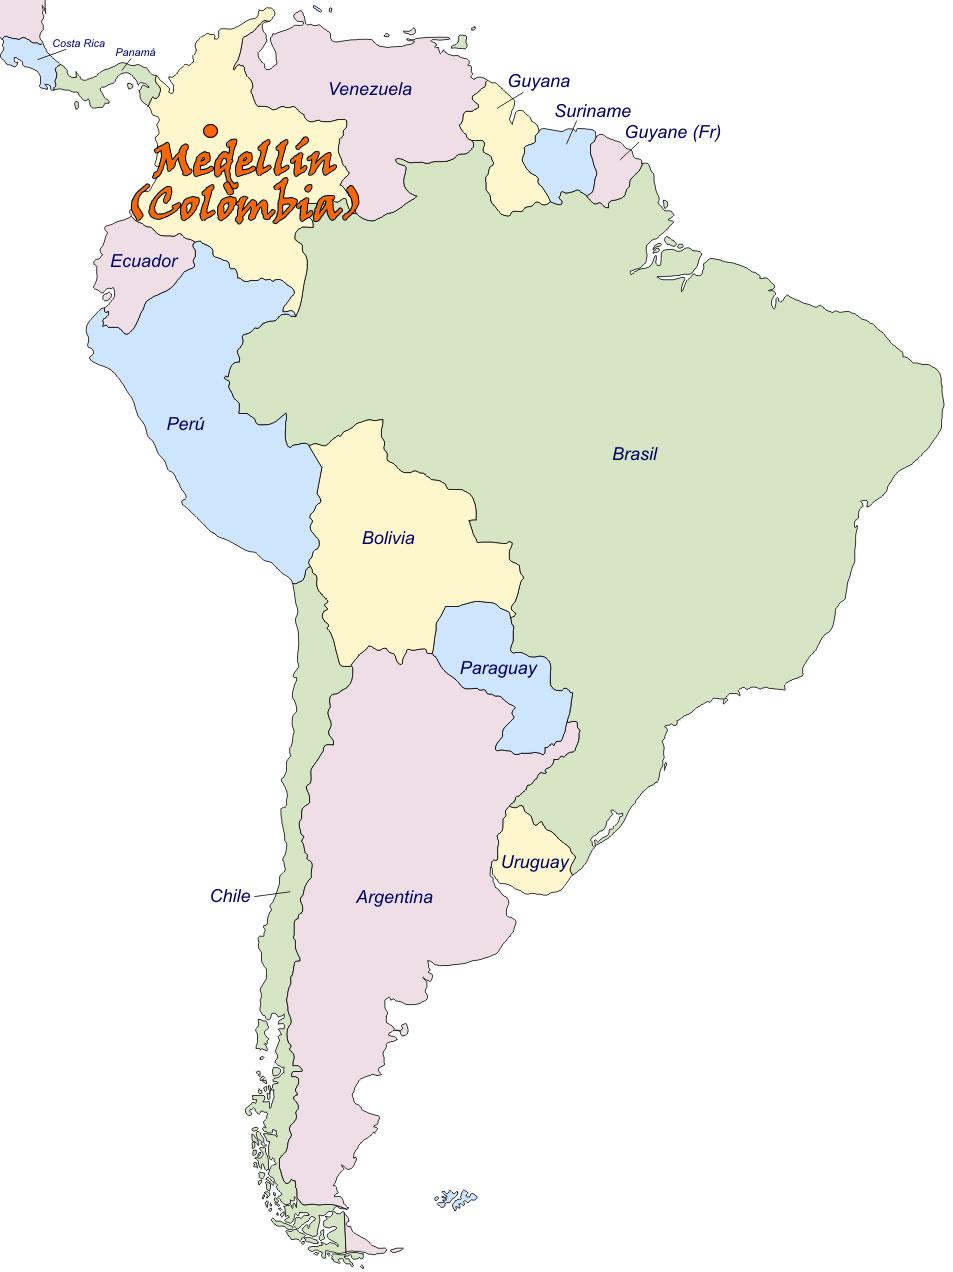 En el siguiente mapa de América del Sur señalará la ciudad de origen,